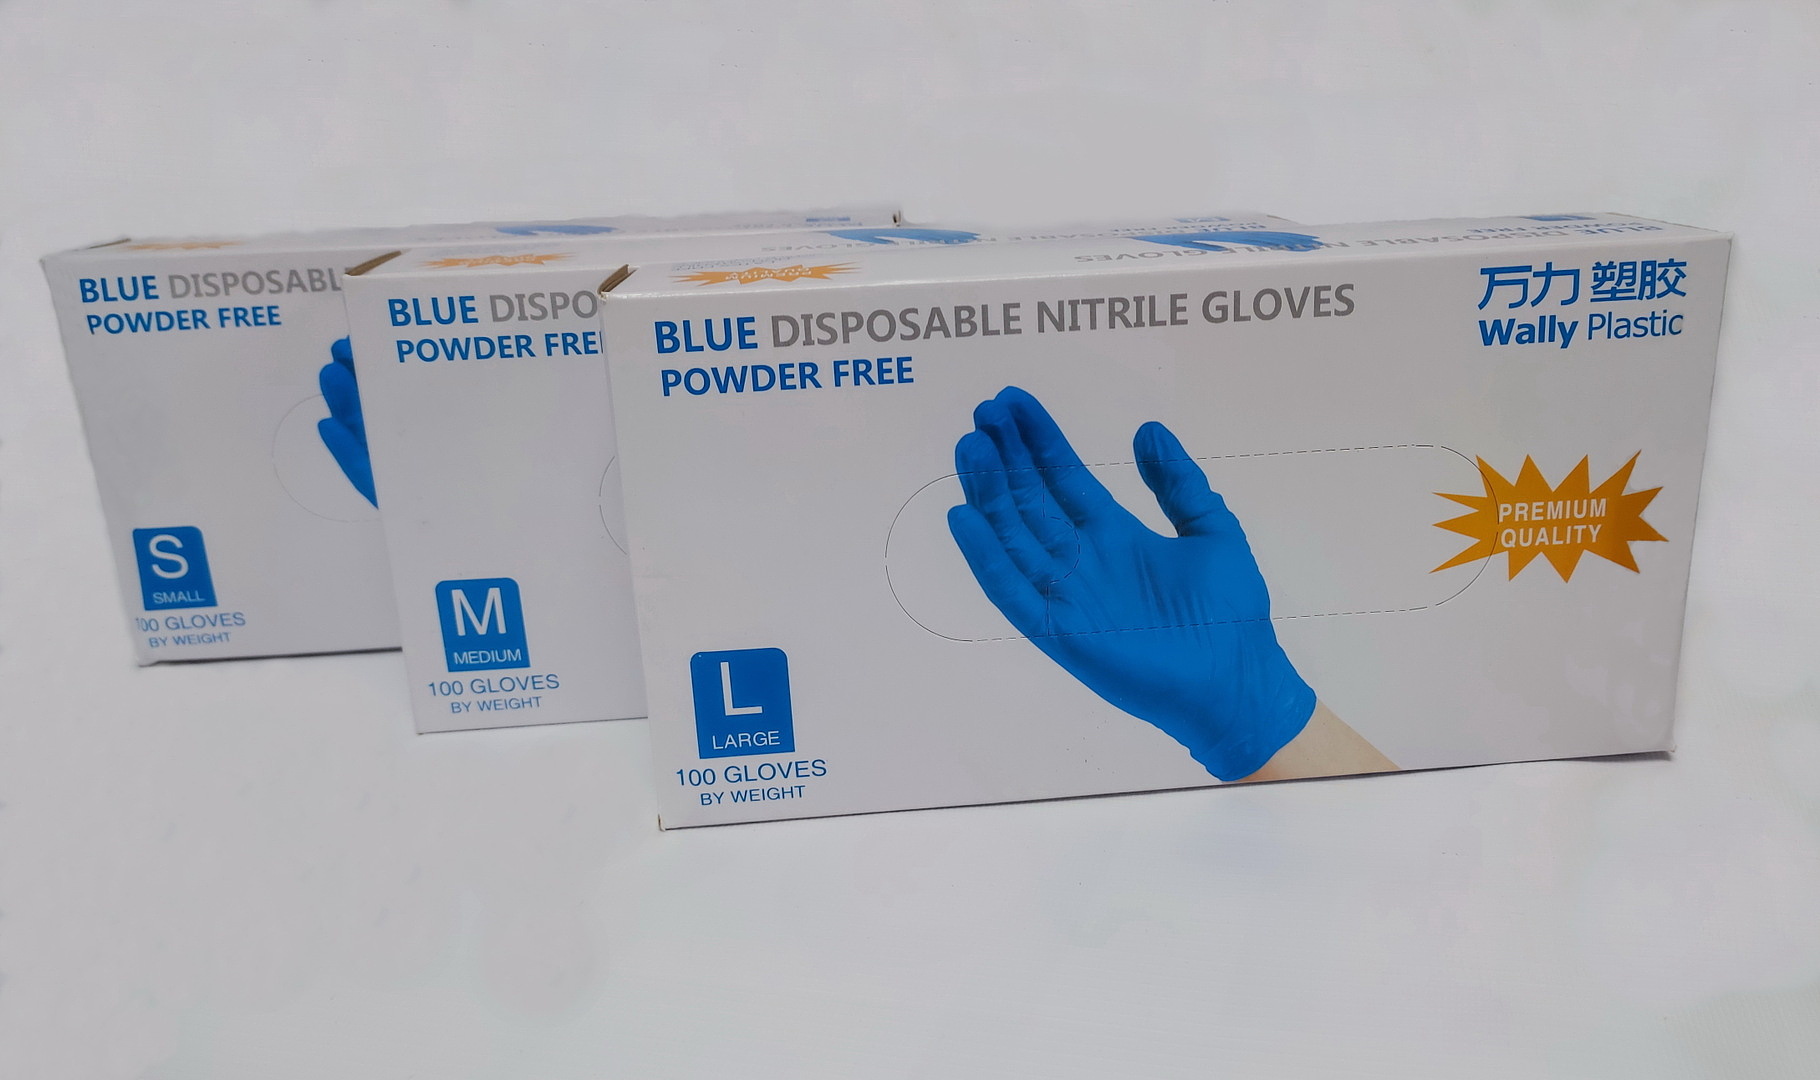 Новинка! Перчатки одноразовые Wally Plastic нитрил 100%, голубые - 100 шт (50 пар), размеры S, M, L — 36 руб/упаковка.